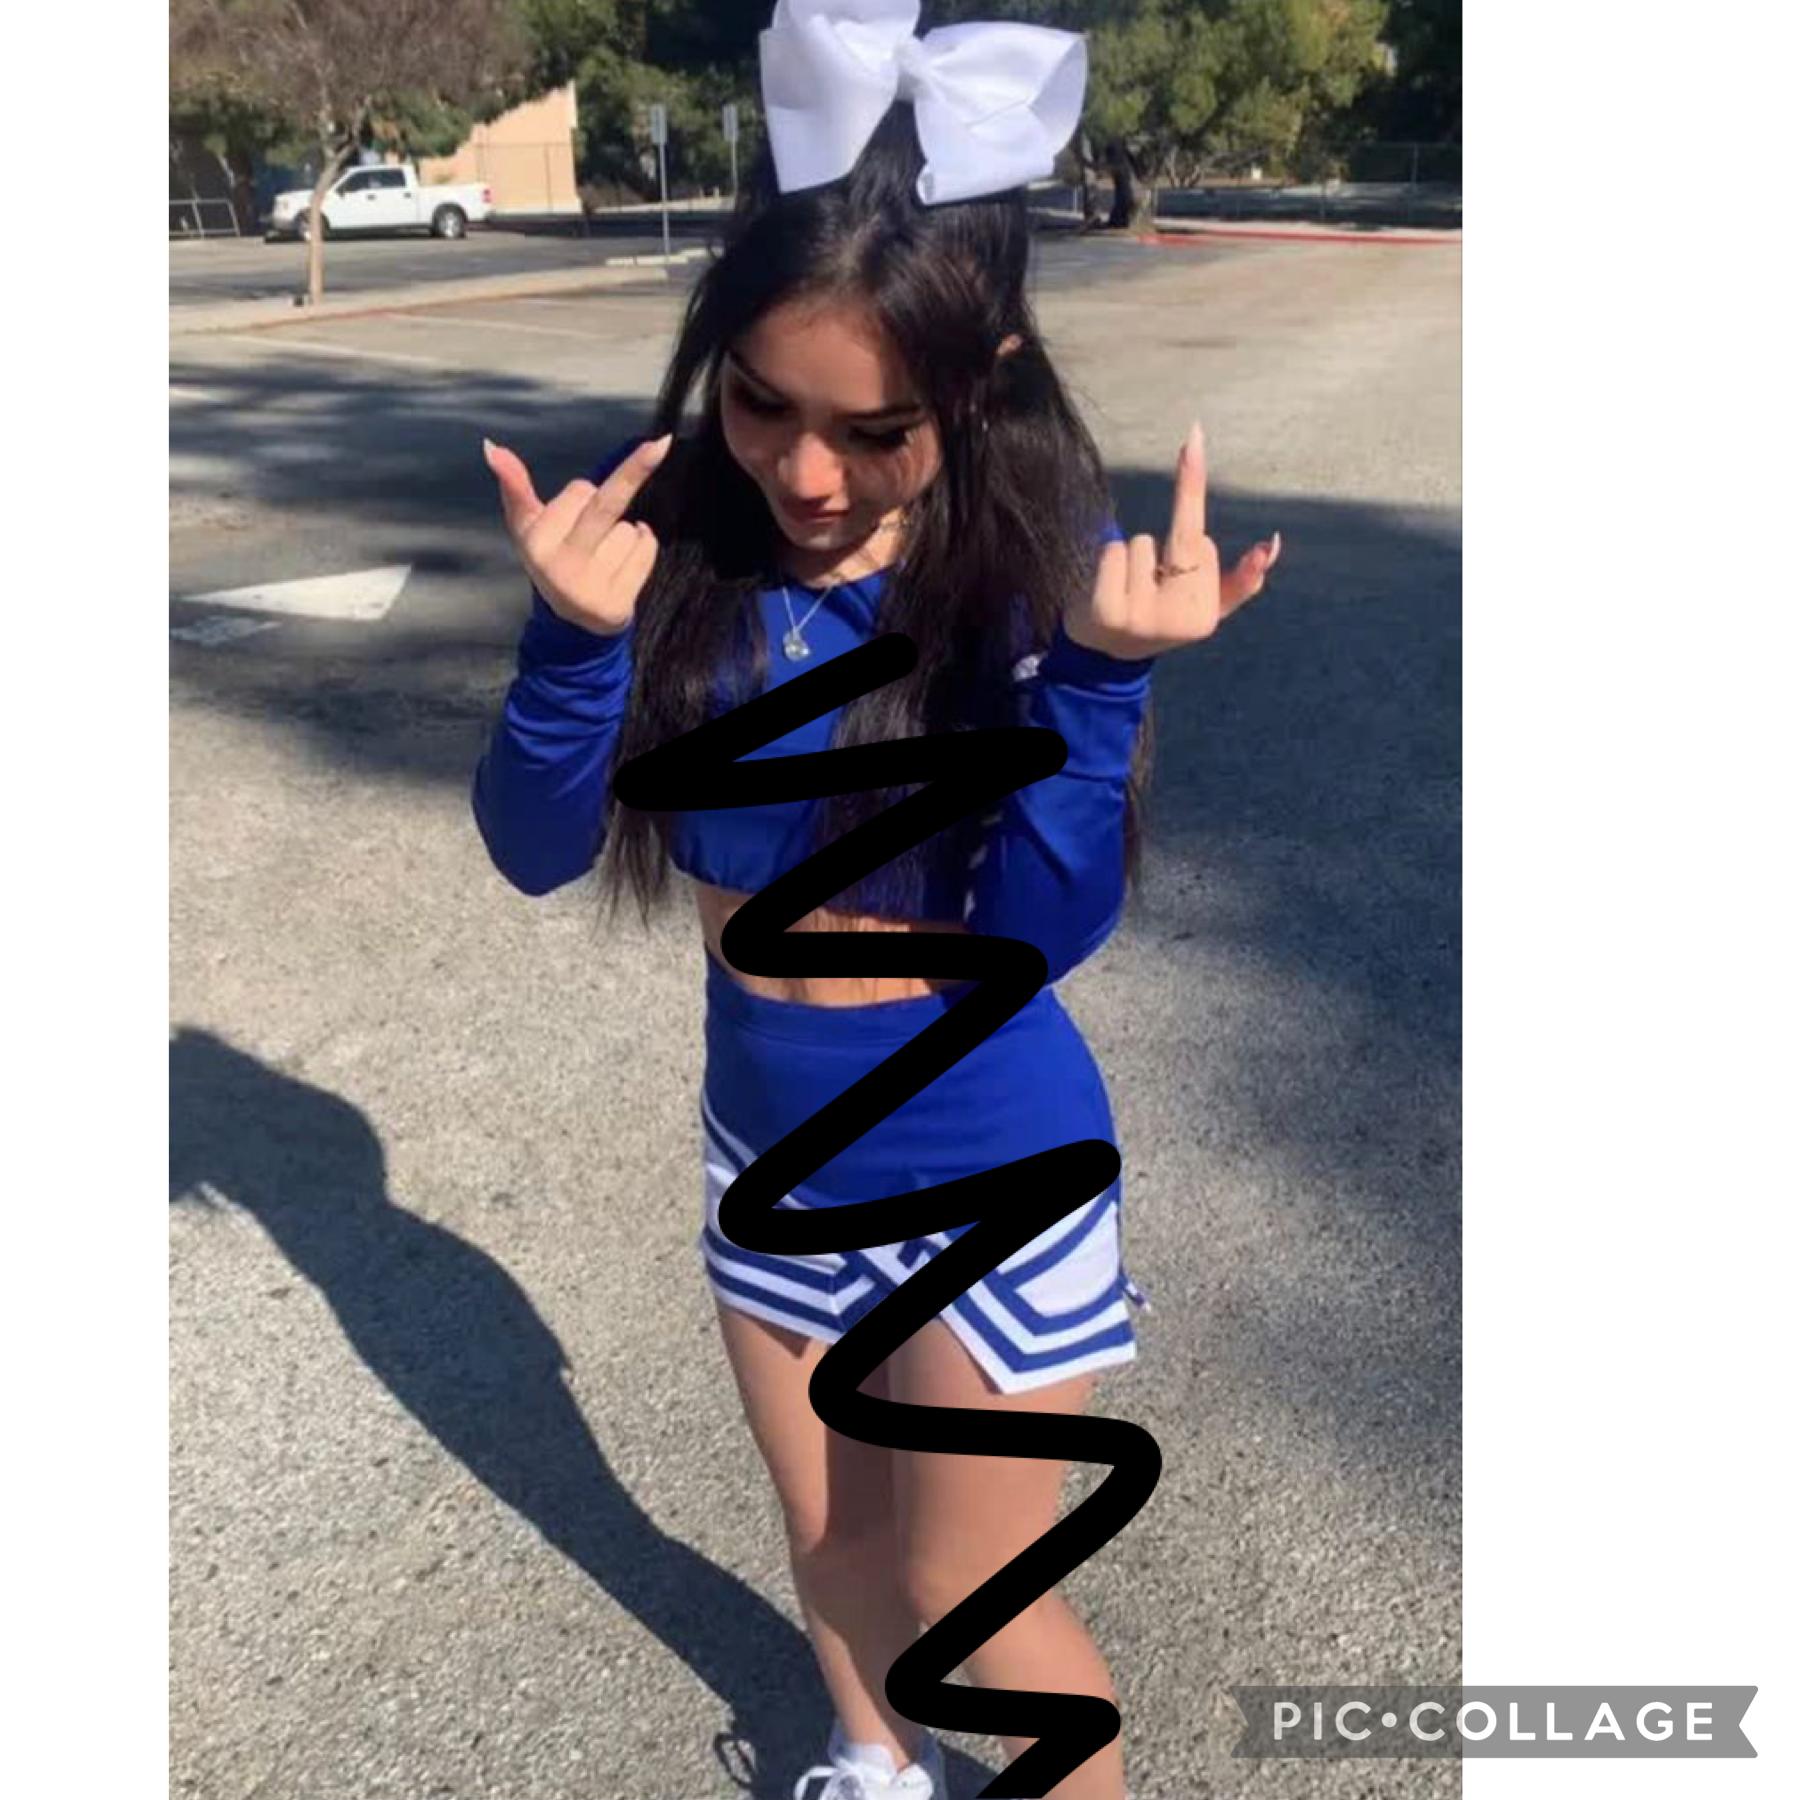 I’m the cheerleader leader 